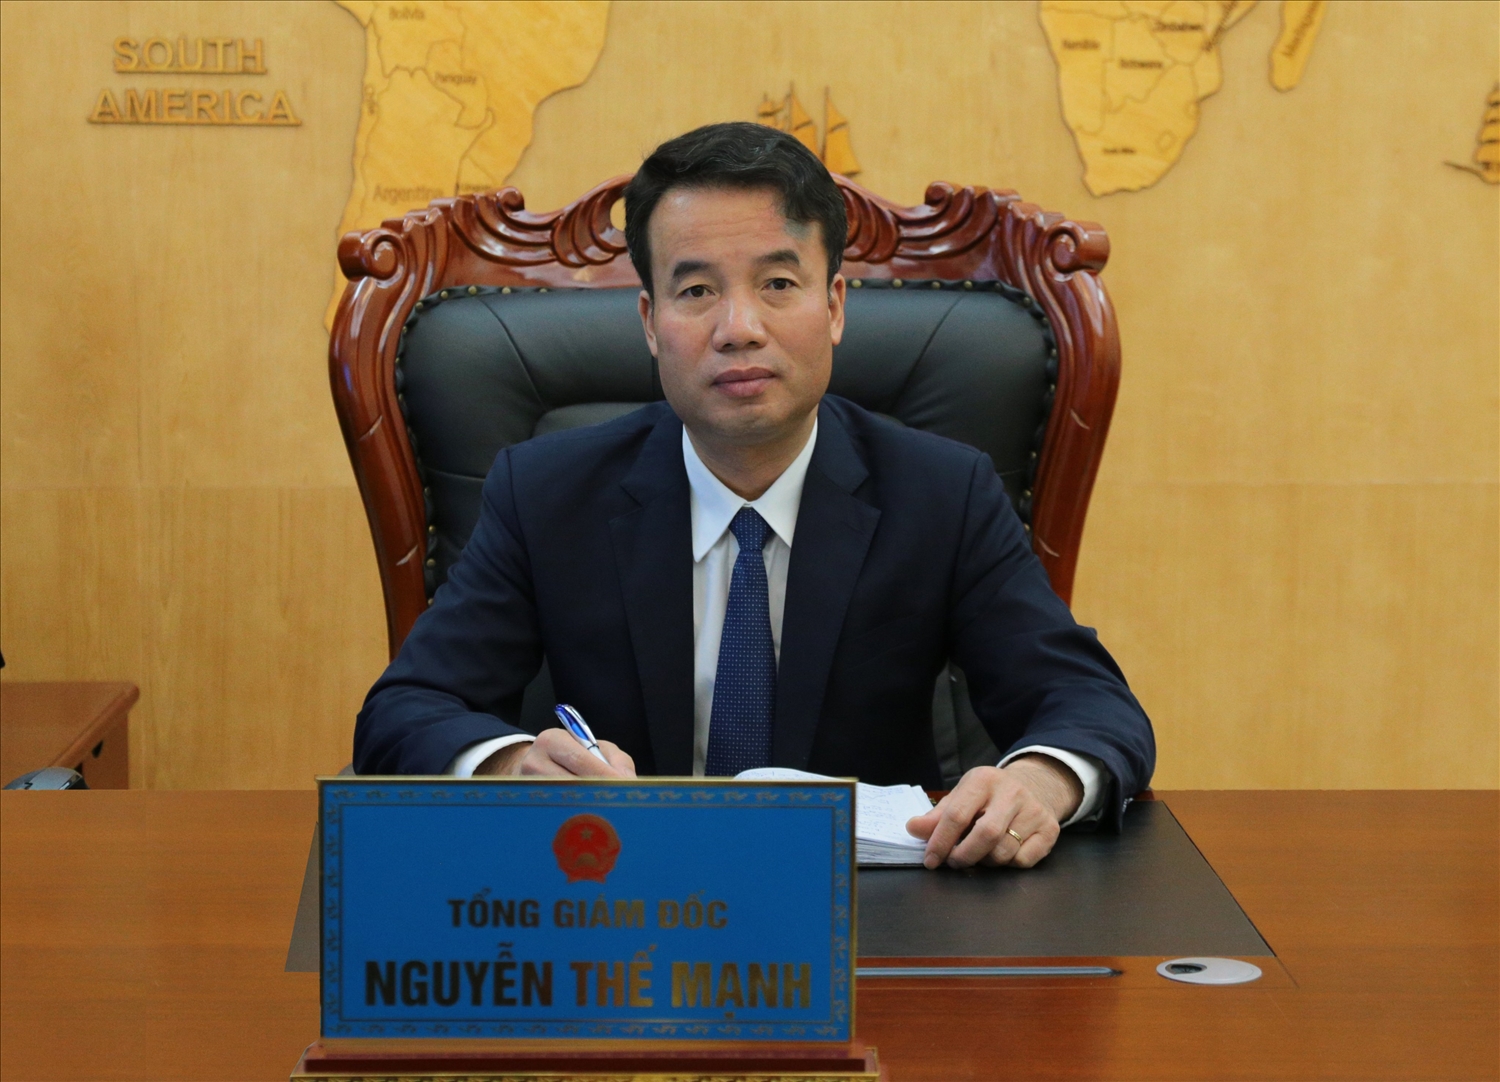 Tổng Giám đốc BHXH Việt Nam Nguyễn Thế Mạnh nhấn mạnh: Quỹ BHXH, BHYT đã trở thành các quỹ an sinh lớn nhất, được quản lý, sử dụng đúng mục đích, an toàn, hiệu quả, công khai, minh bạch.